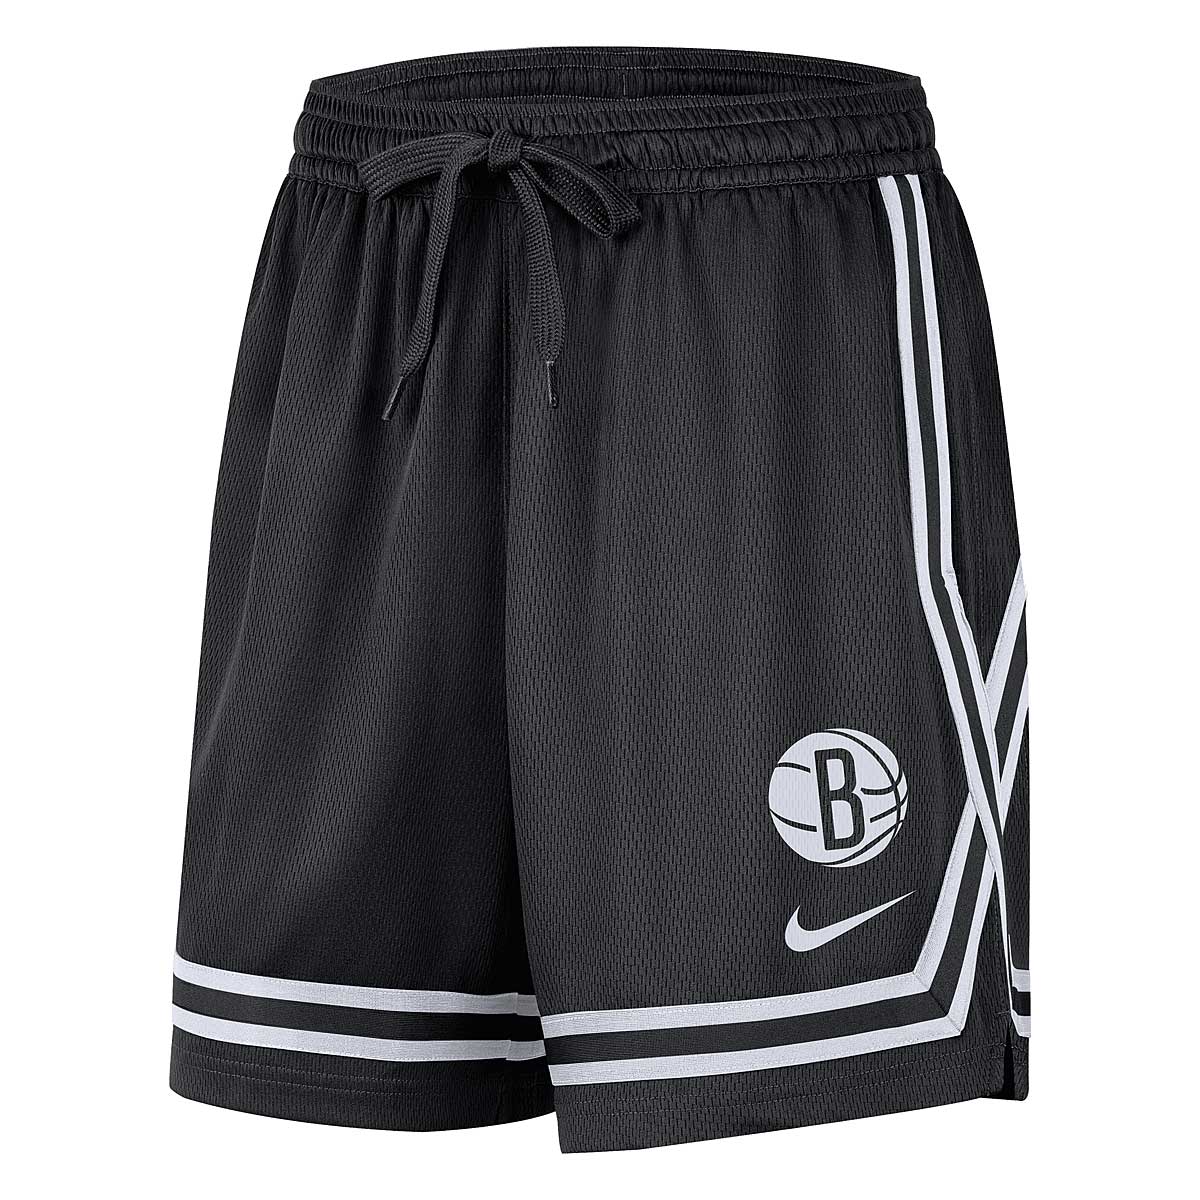 Nike Nba Brooklyn Nets Dri-Fit Short Xvr Cts W, Black/White/Black